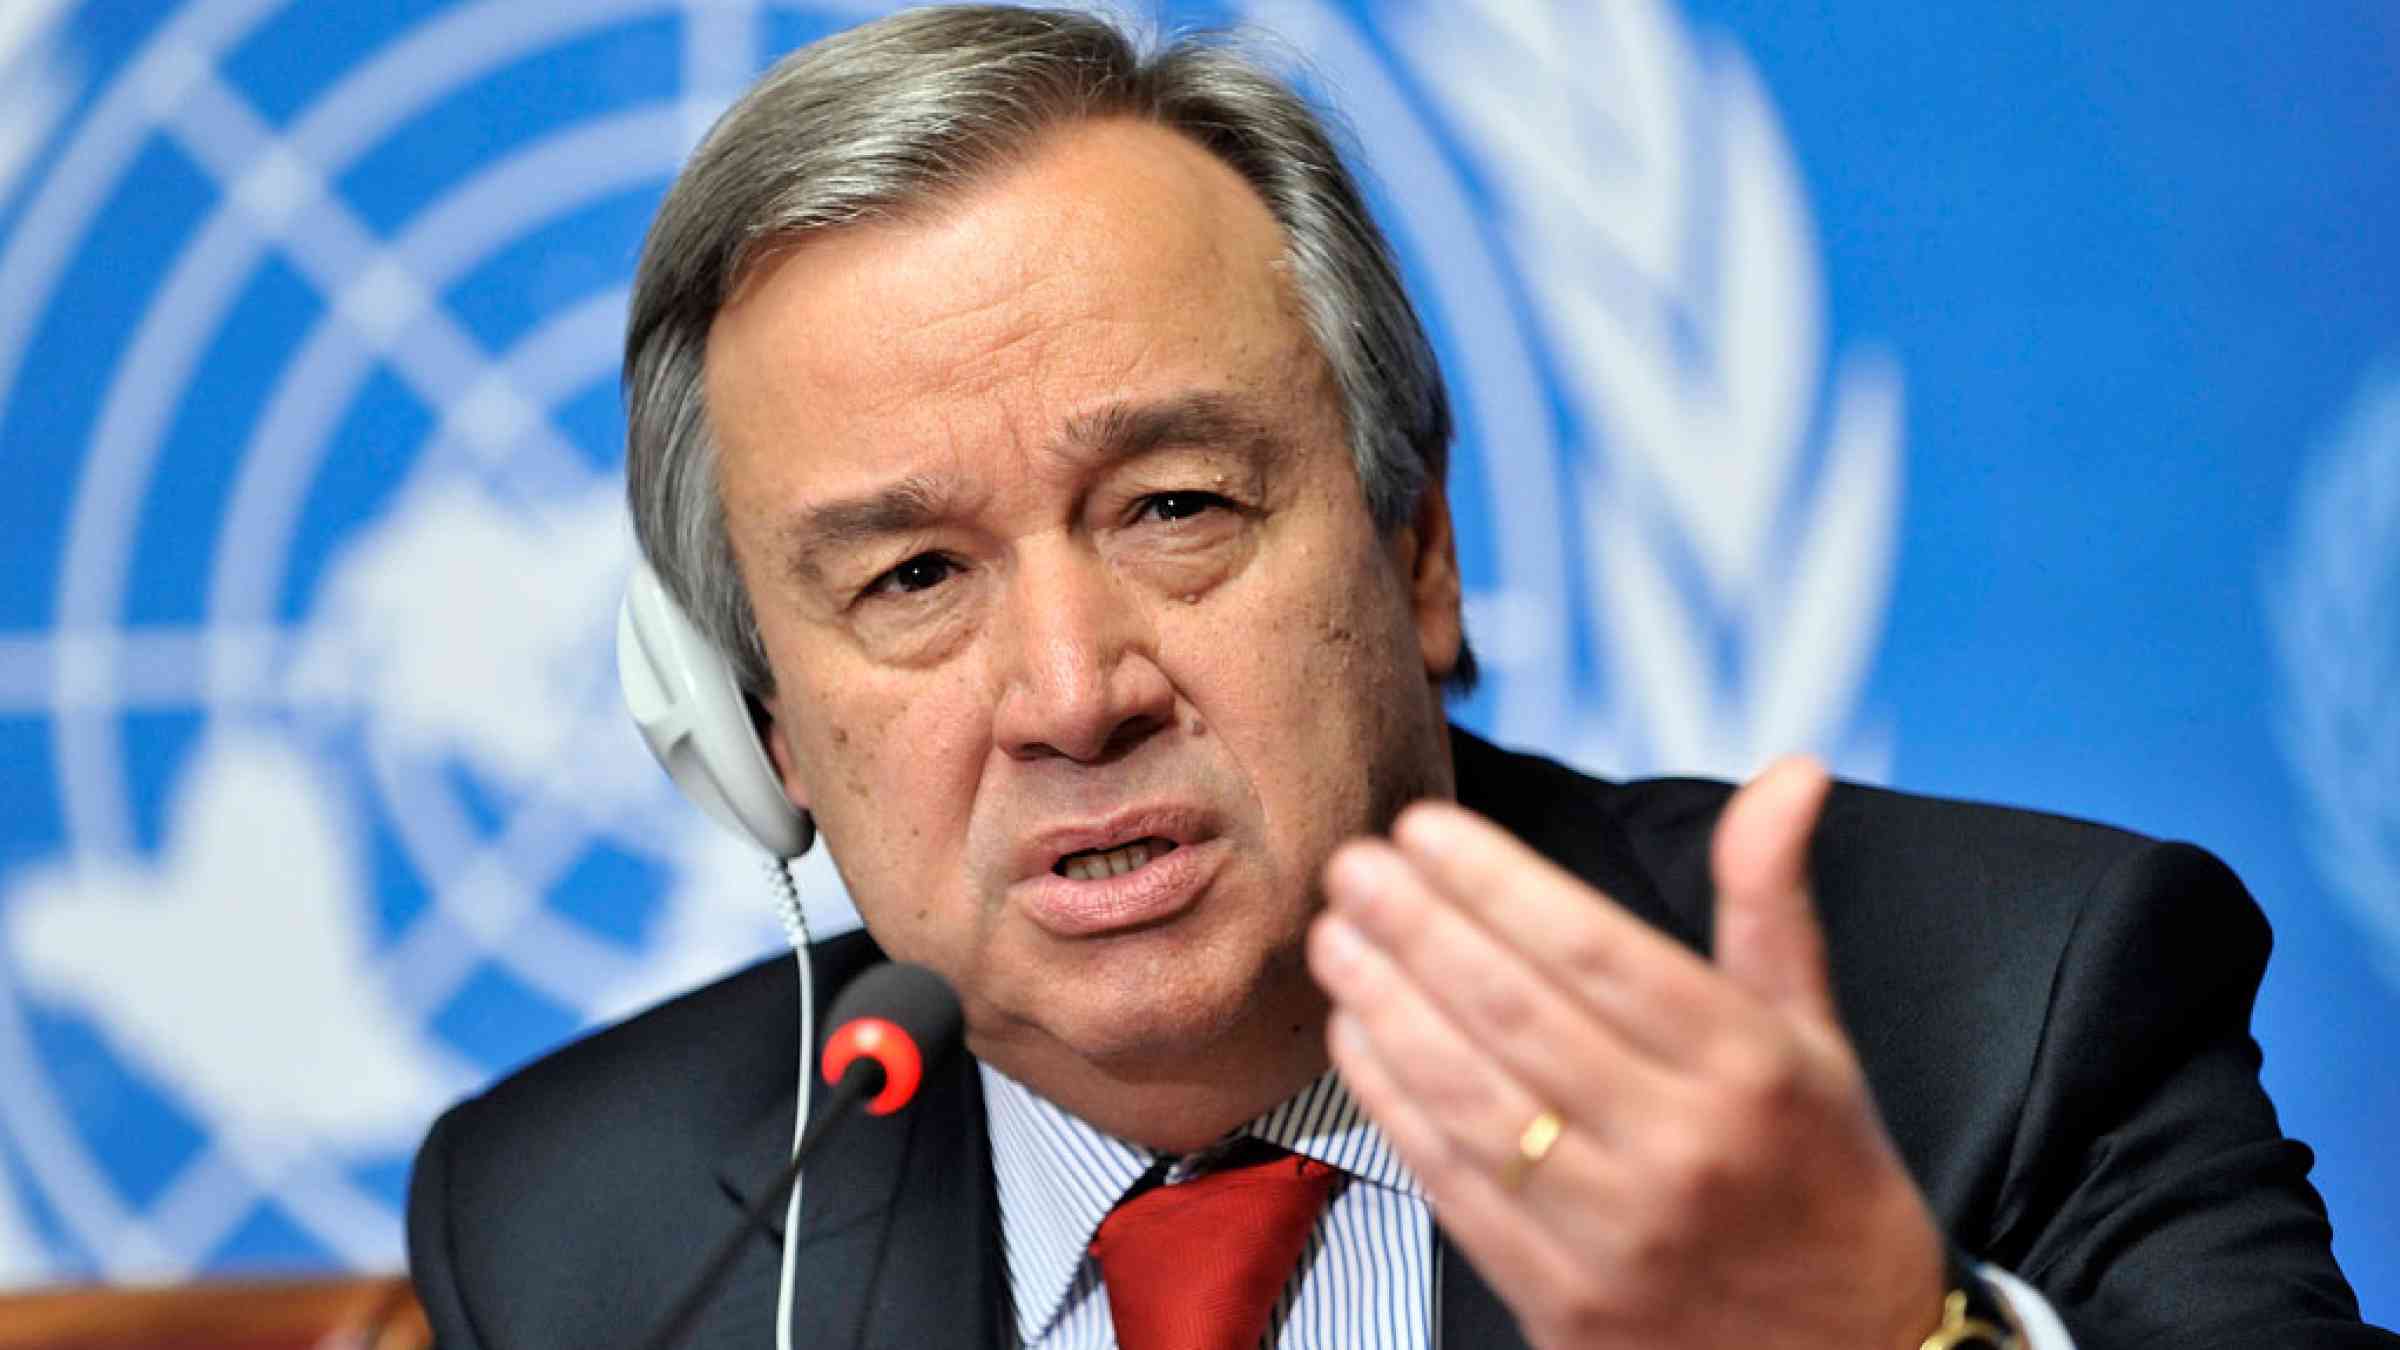 António Guterres UN Secretary-General